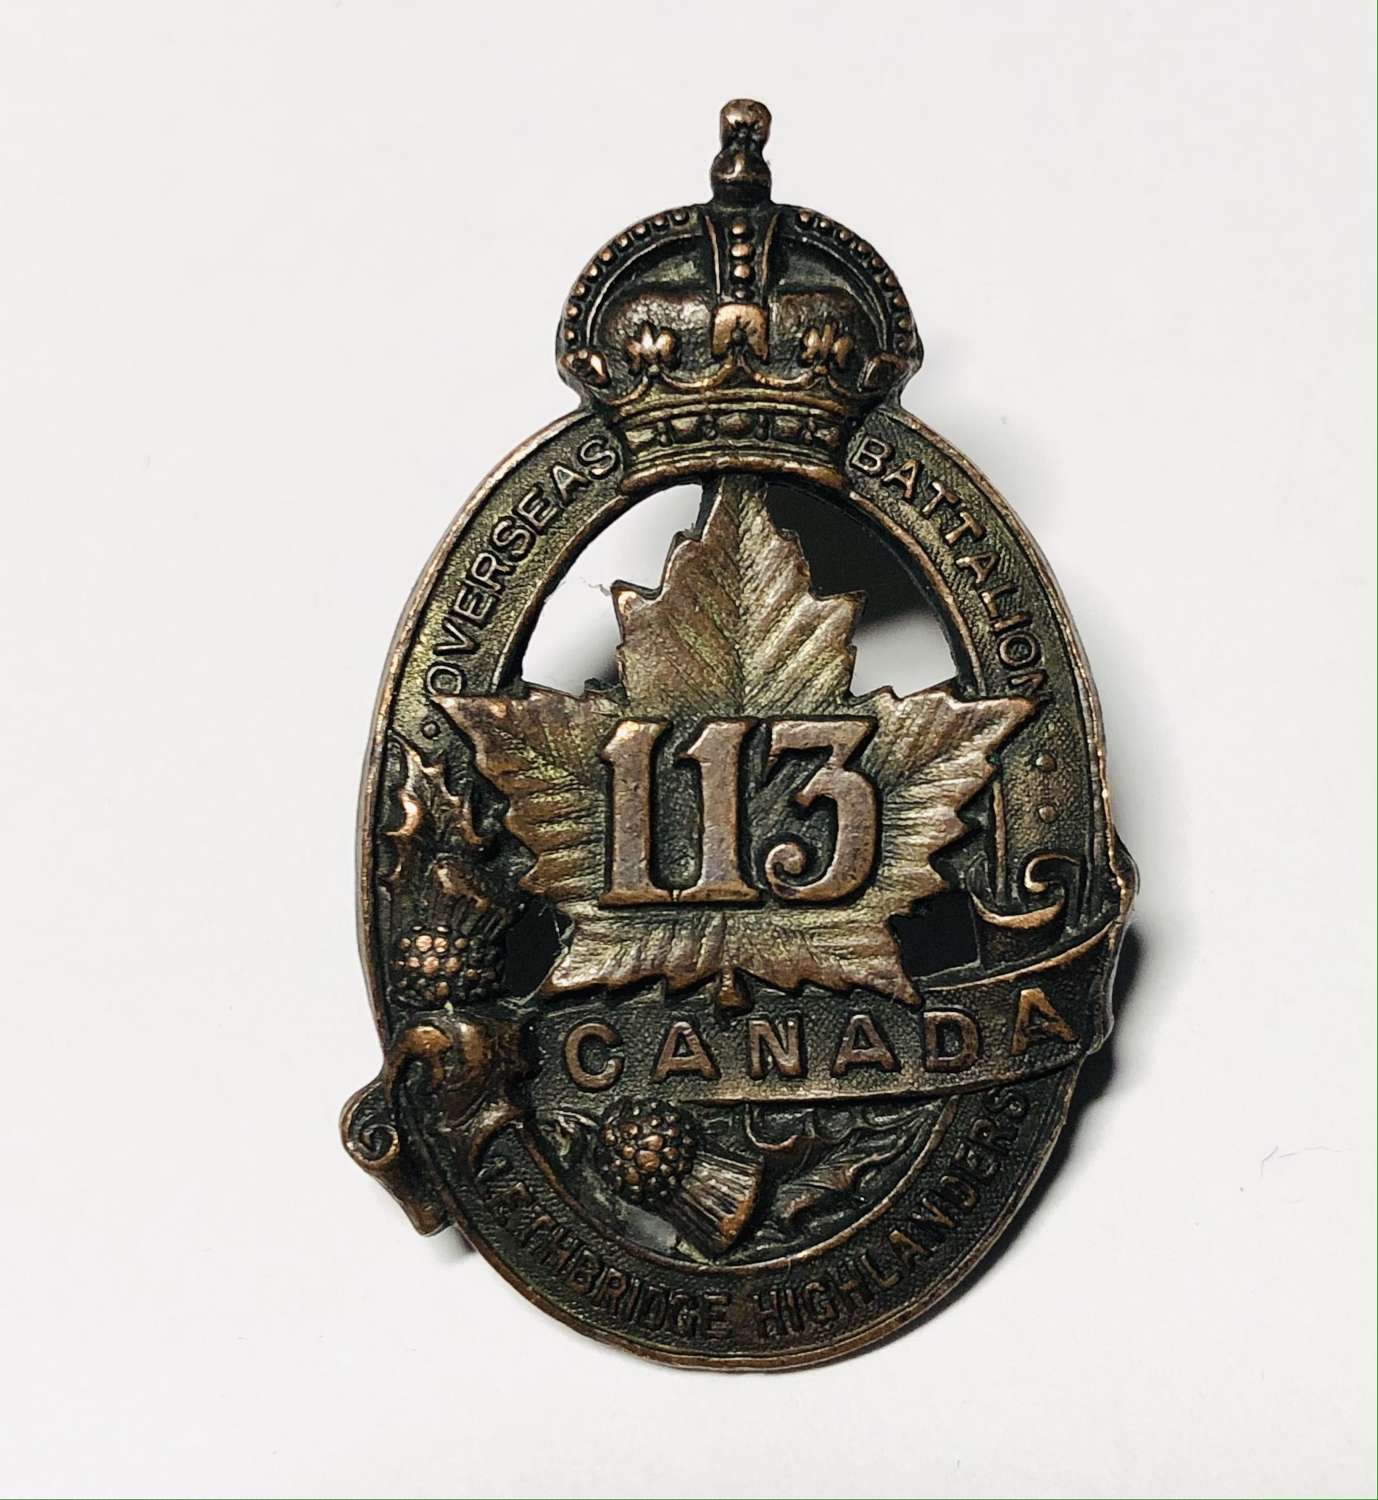 Canada 113th Bn (Lethbridge Highlanders) CEF WW1 cap badge by Black